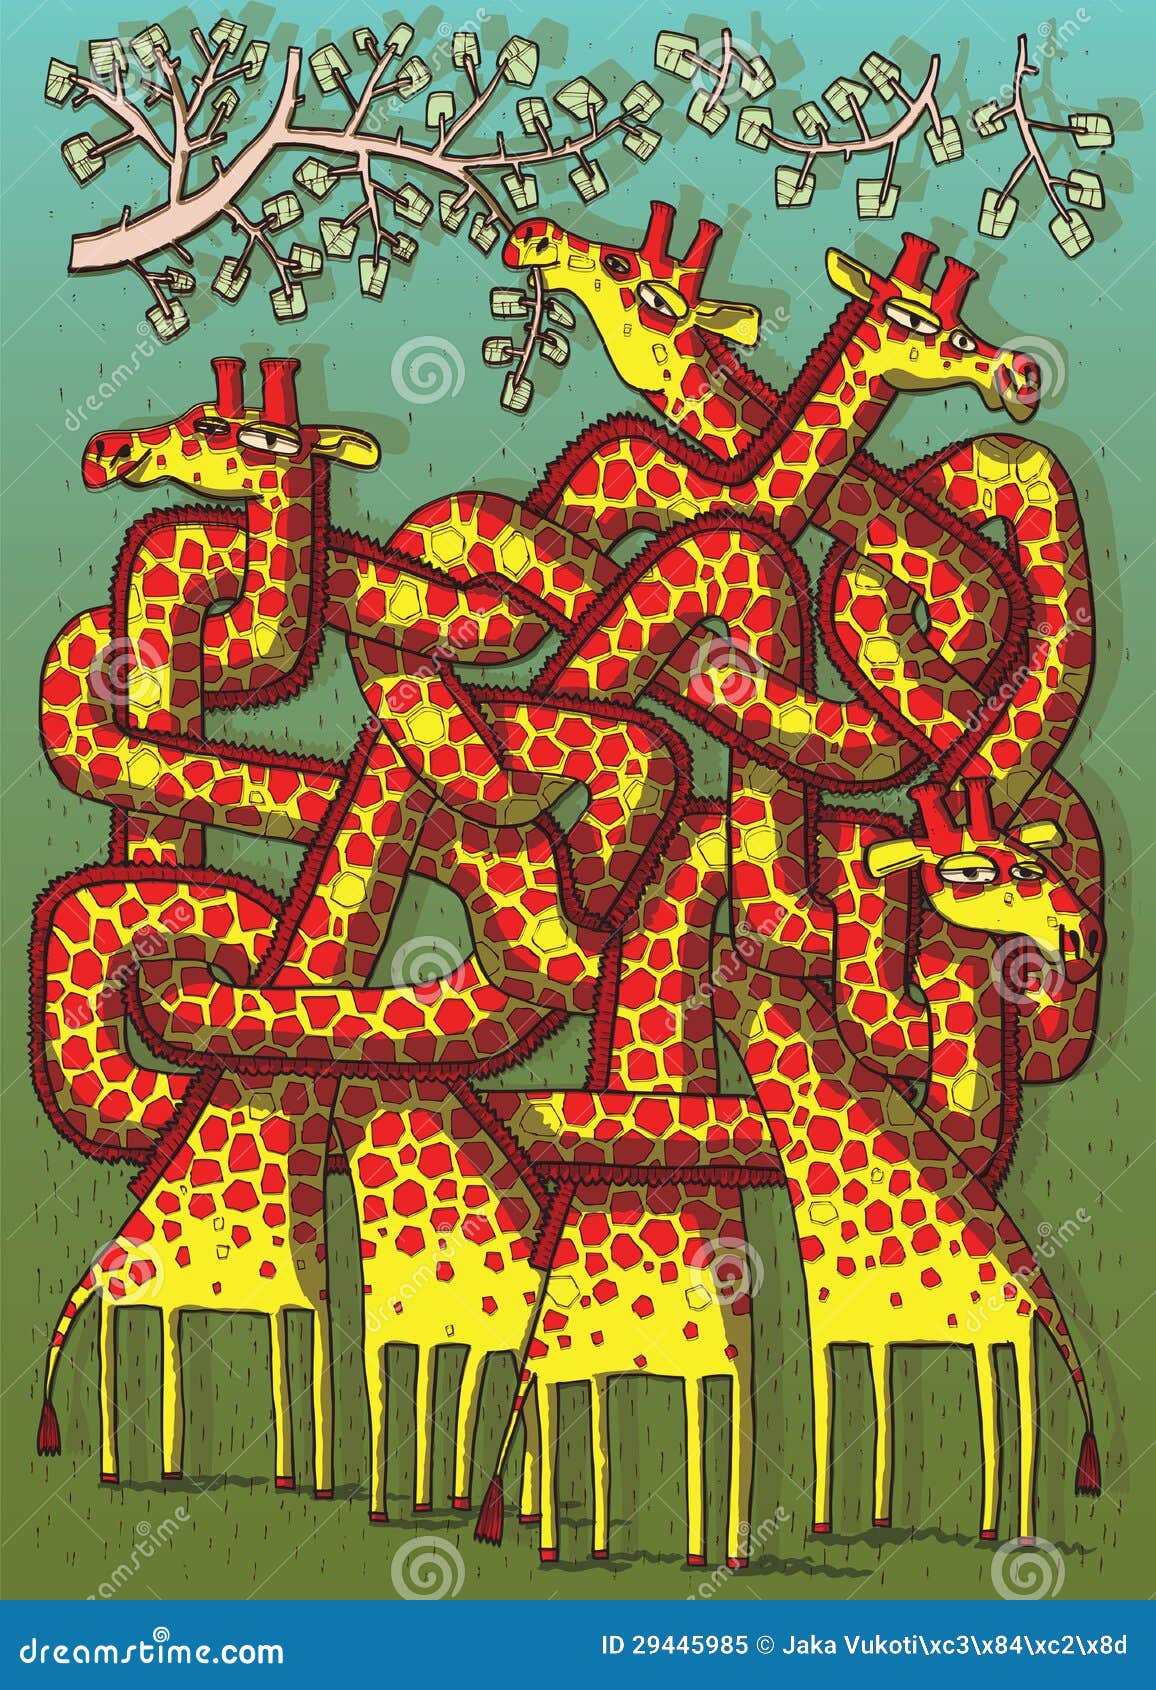 giraffes maze game